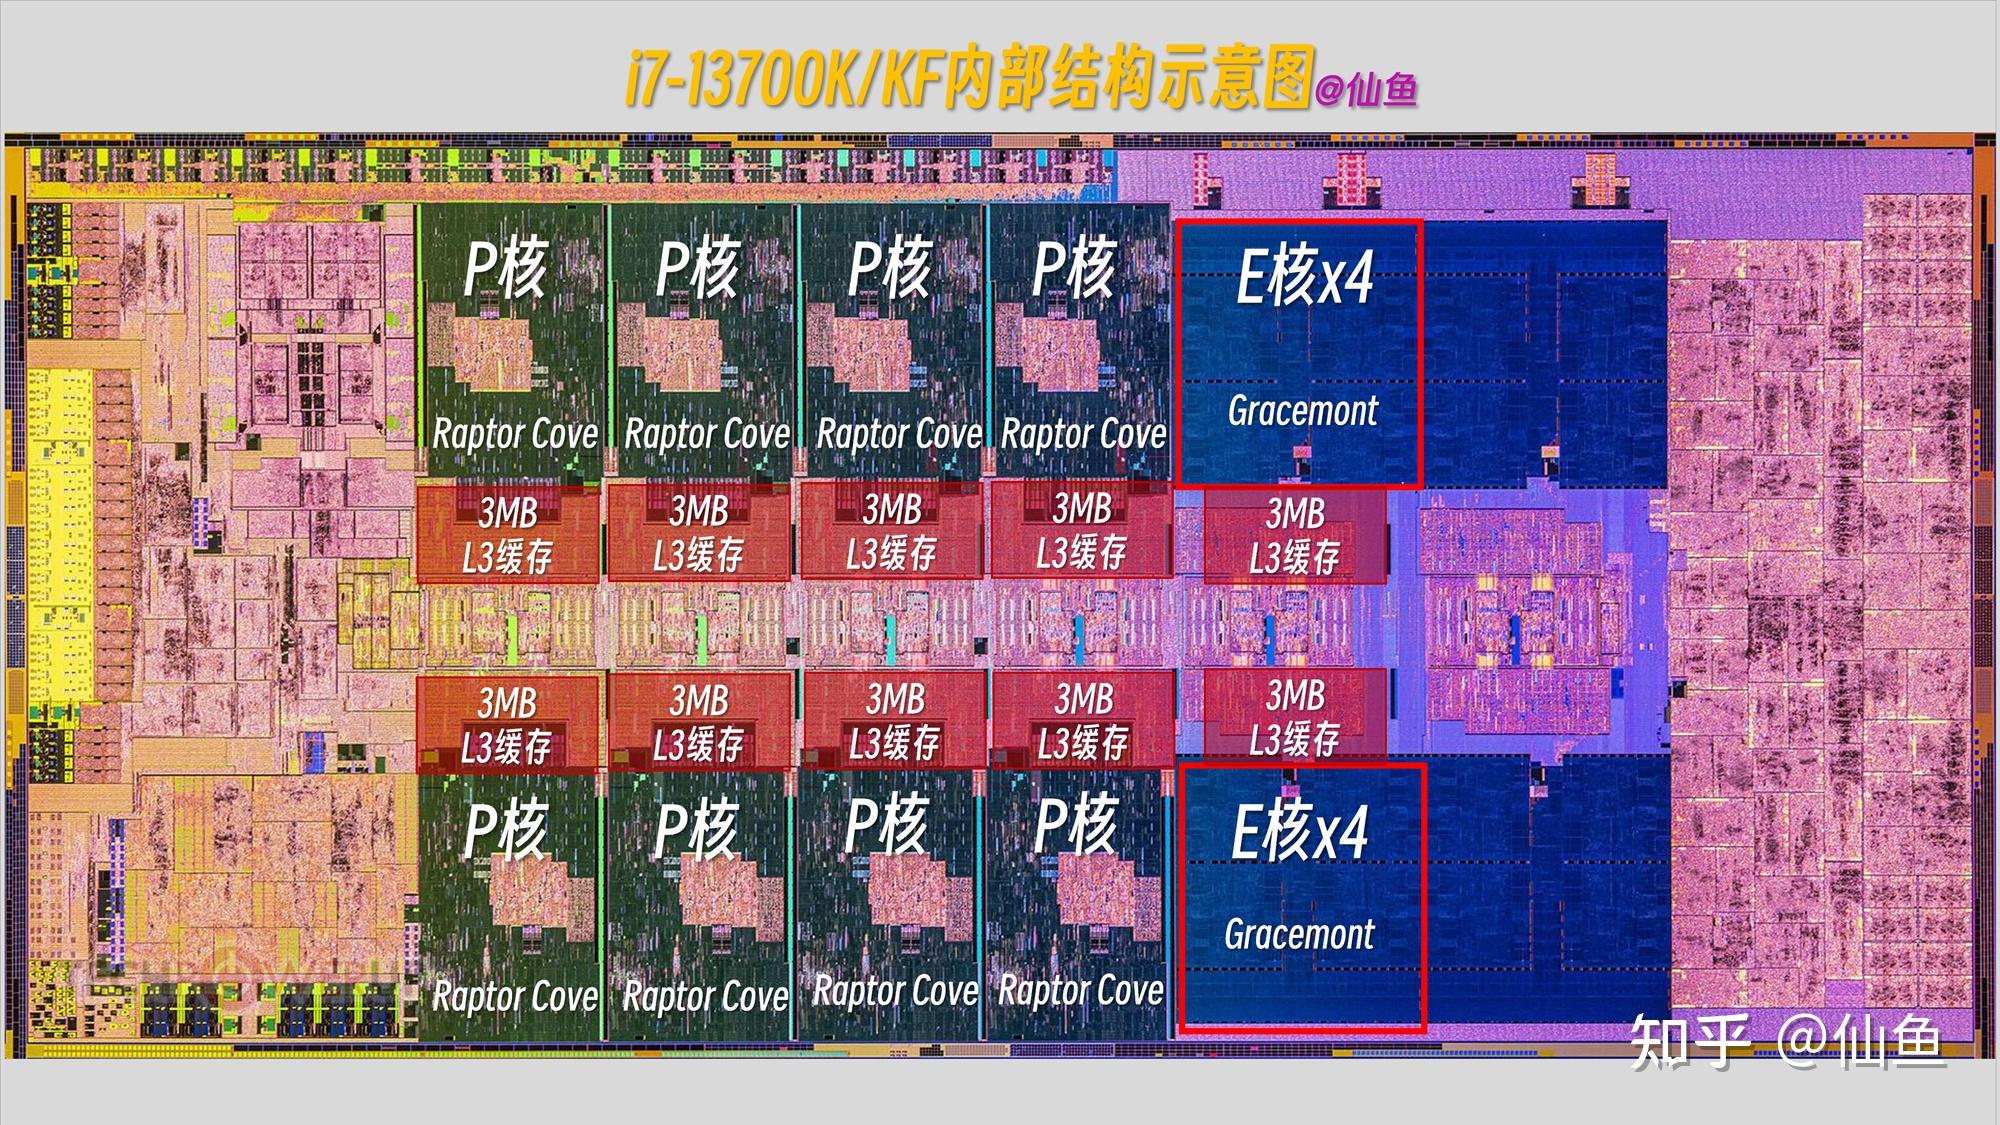 DDR4与DDR5内存全面对比：性能、技术与应用差异一览  第6张